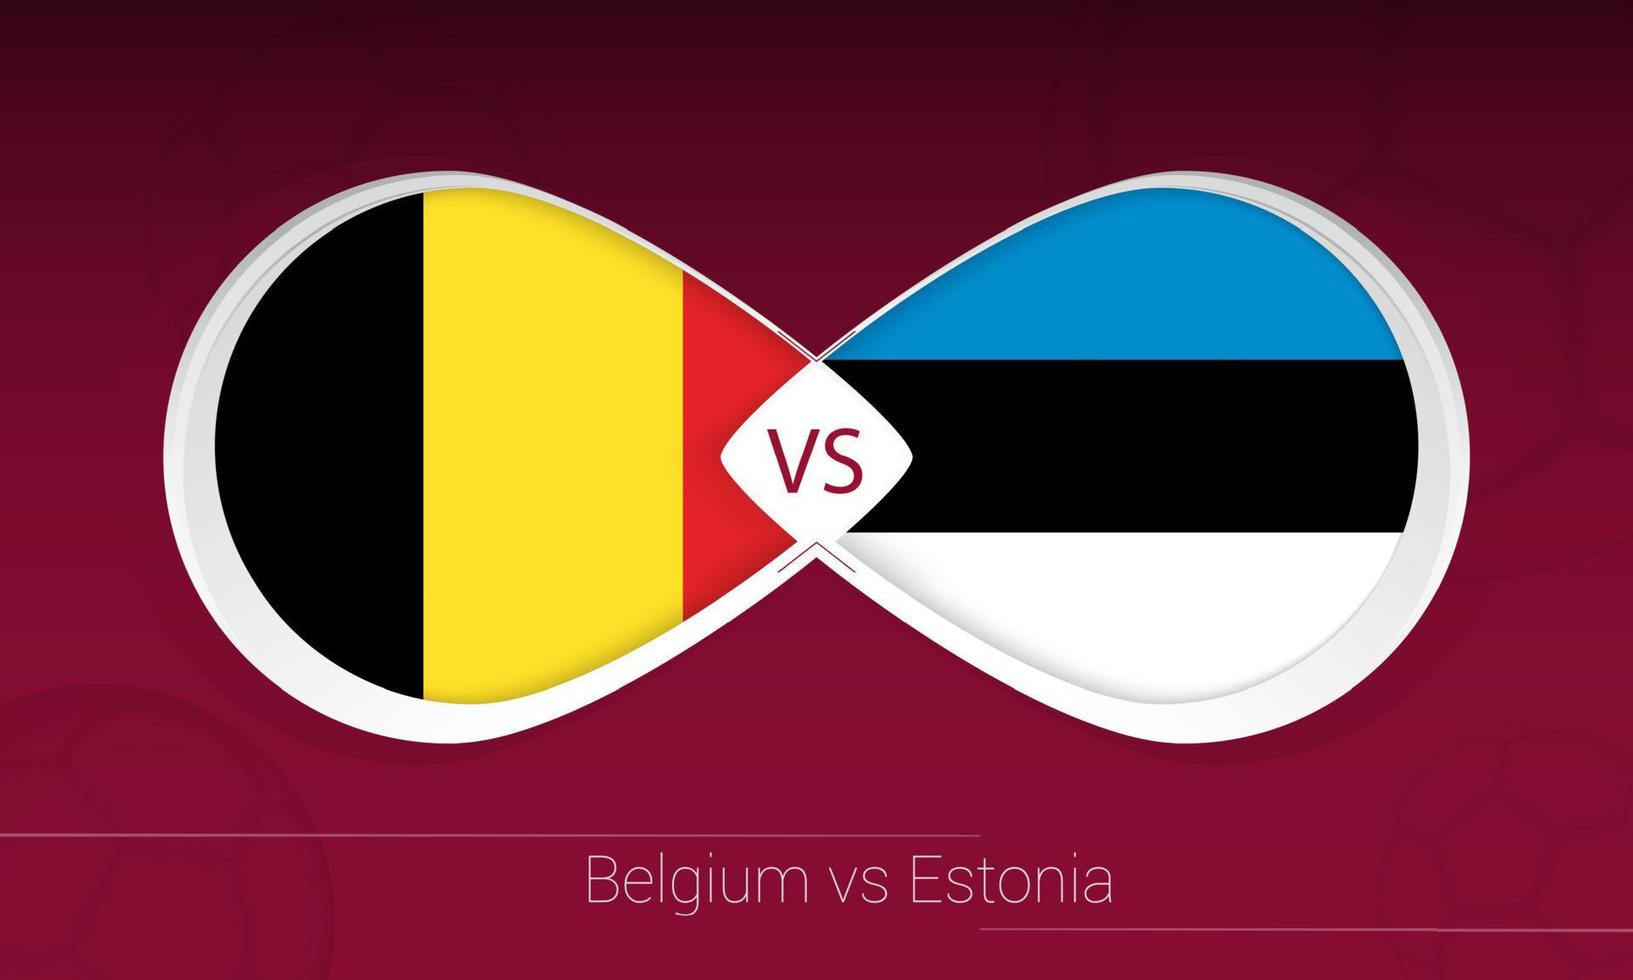 bélgica vs estonia en competición de fútbol, grupo e. versus icono en el fondo del fútbol. vector